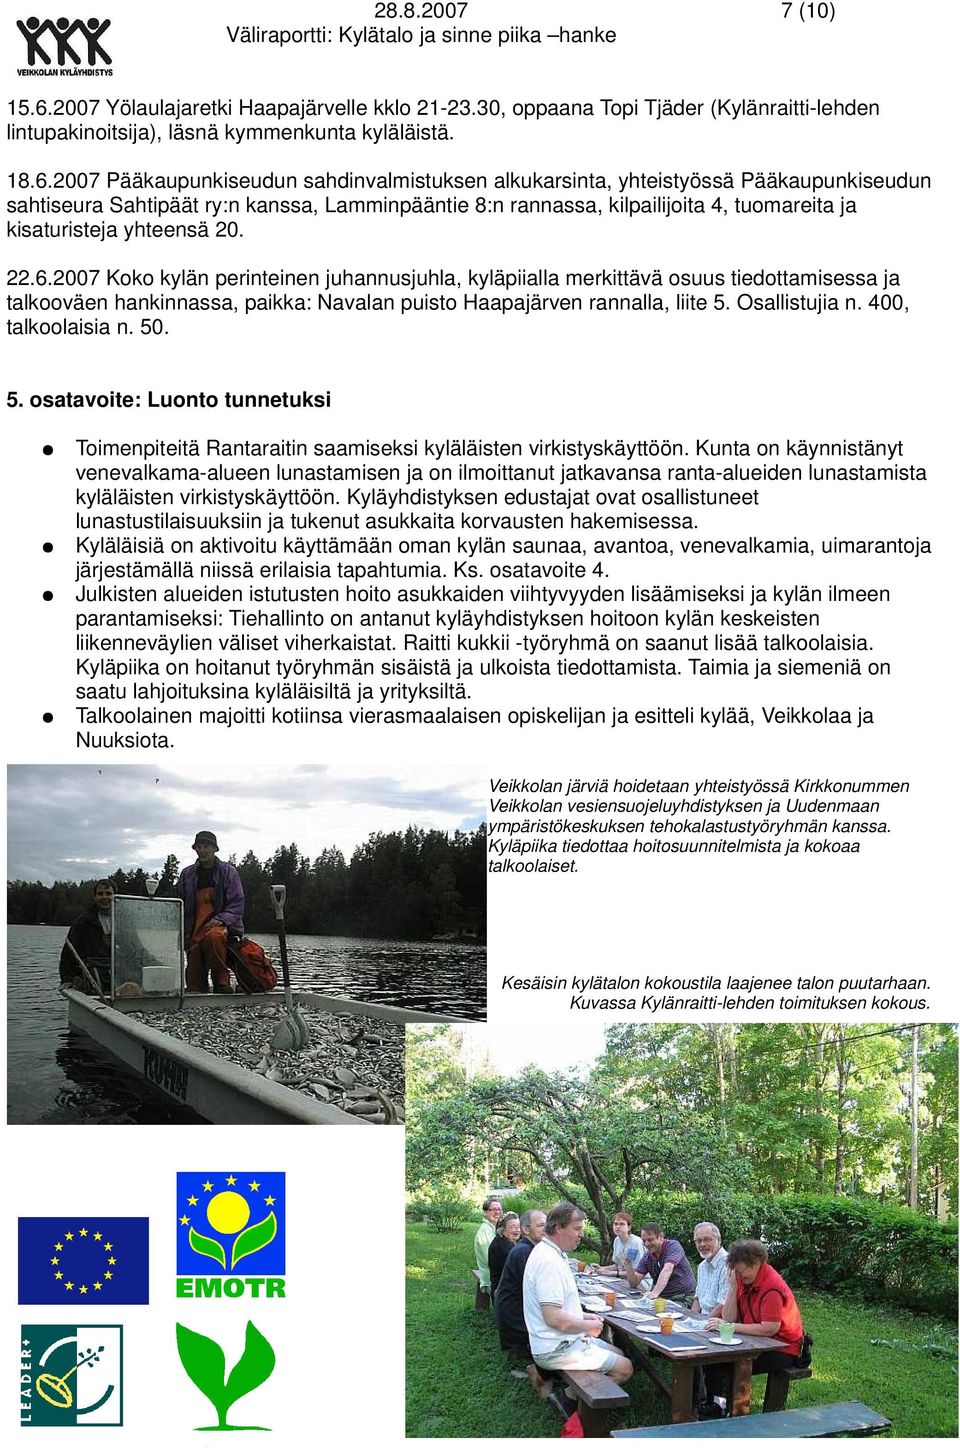 2007 Pääkaupunkiseudun sahdinvalmistuksen alkukarsinta, yhteistyössä Pääkaupunkiseudun sahtiseura Sahtipäät ry:n kanssa, Lamminpääntie 8:n rannassa, kilpailijoita 4, tuomareita ja kisaturisteja